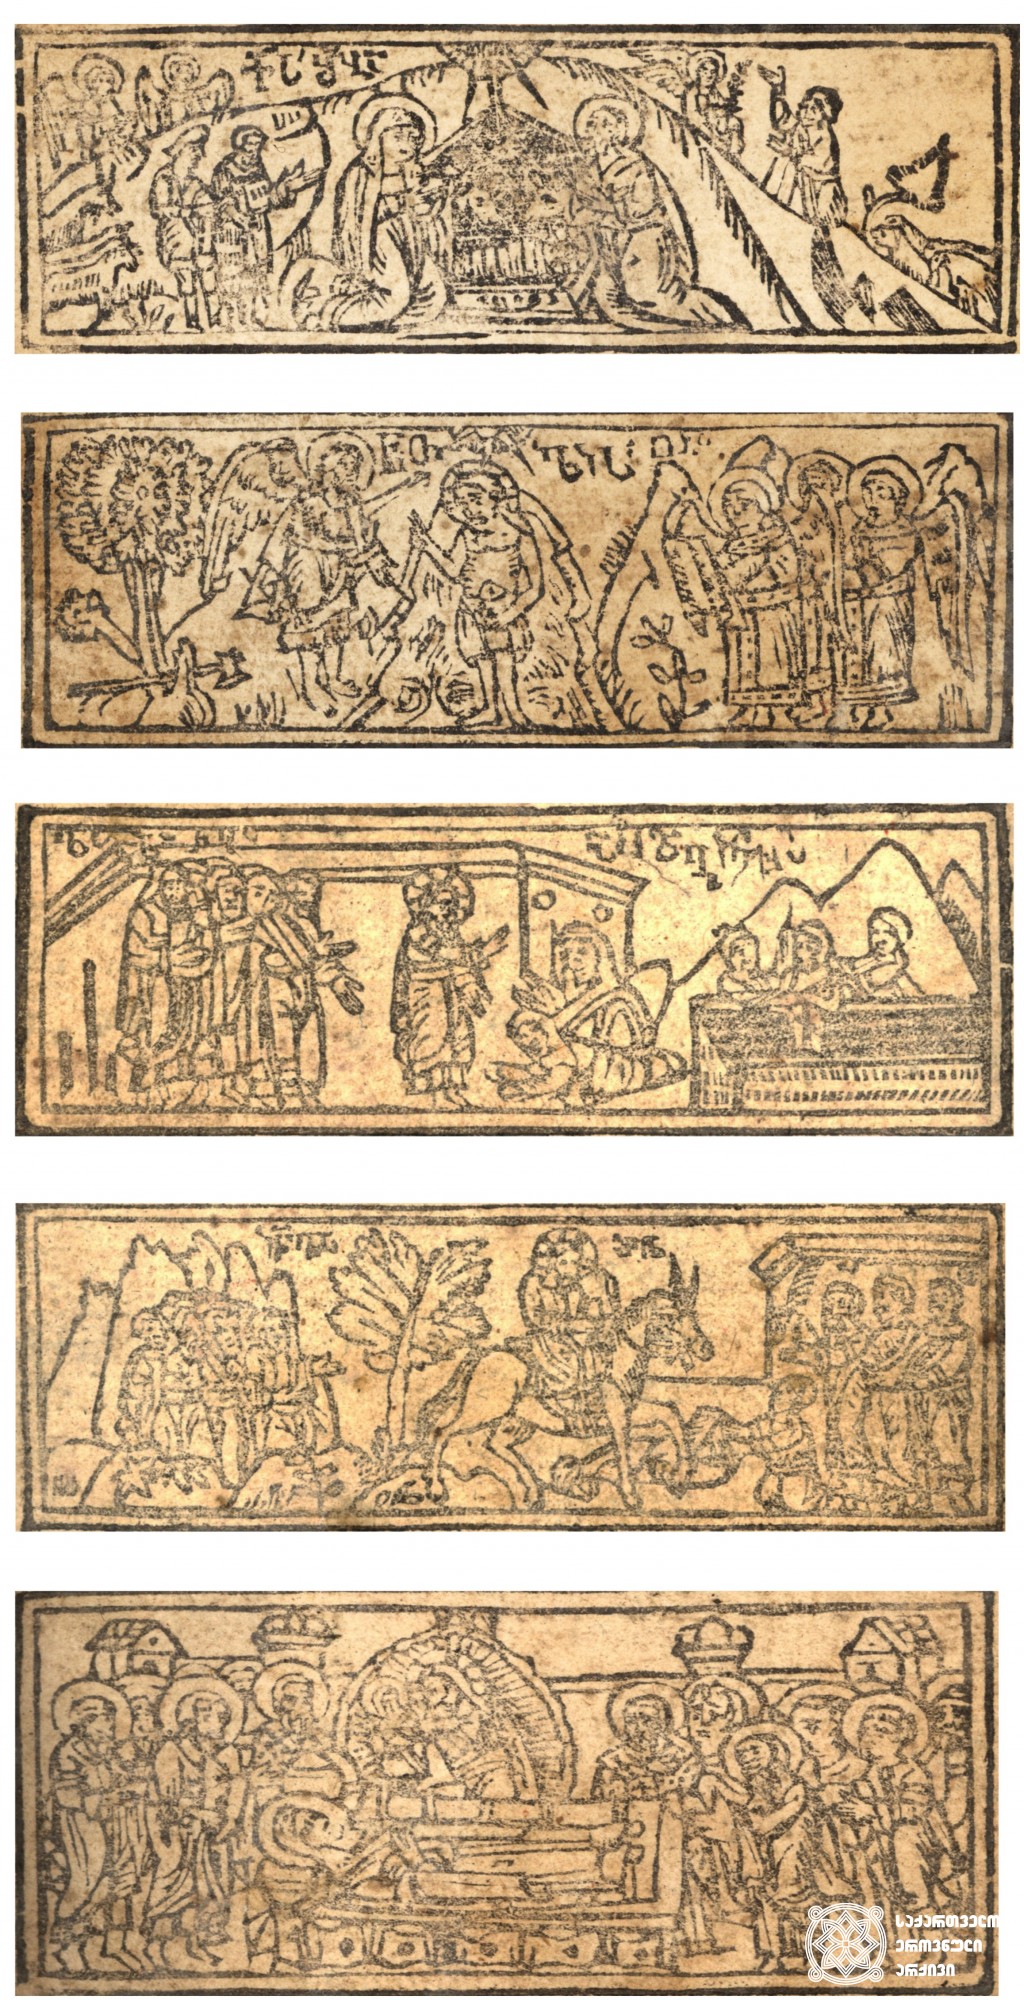 თავსამკაულები ხარების, ნათლისღების, ბზობის, აღდგომისა და ღვთისმშობლის მიძინების მინიატურებით <br>
ჟამნი   <br>
ტფილისი, 1717  <br>
ვახტანგ VI-ის სტამბა <br>
მესტამბე: მიხაილ სტეფანეს ძე უნგროვლახელი <br>

Decorations with the Miniatures of Annunciation, Epiphany, Palm Sunday, Easter and Assumption of St. Mary <br>
Horologion <br>
Tfilisi, 1717 <br>
Printing house of Vakhtang VI <br>
Printer: Mihai Ungrovlakheli <br>